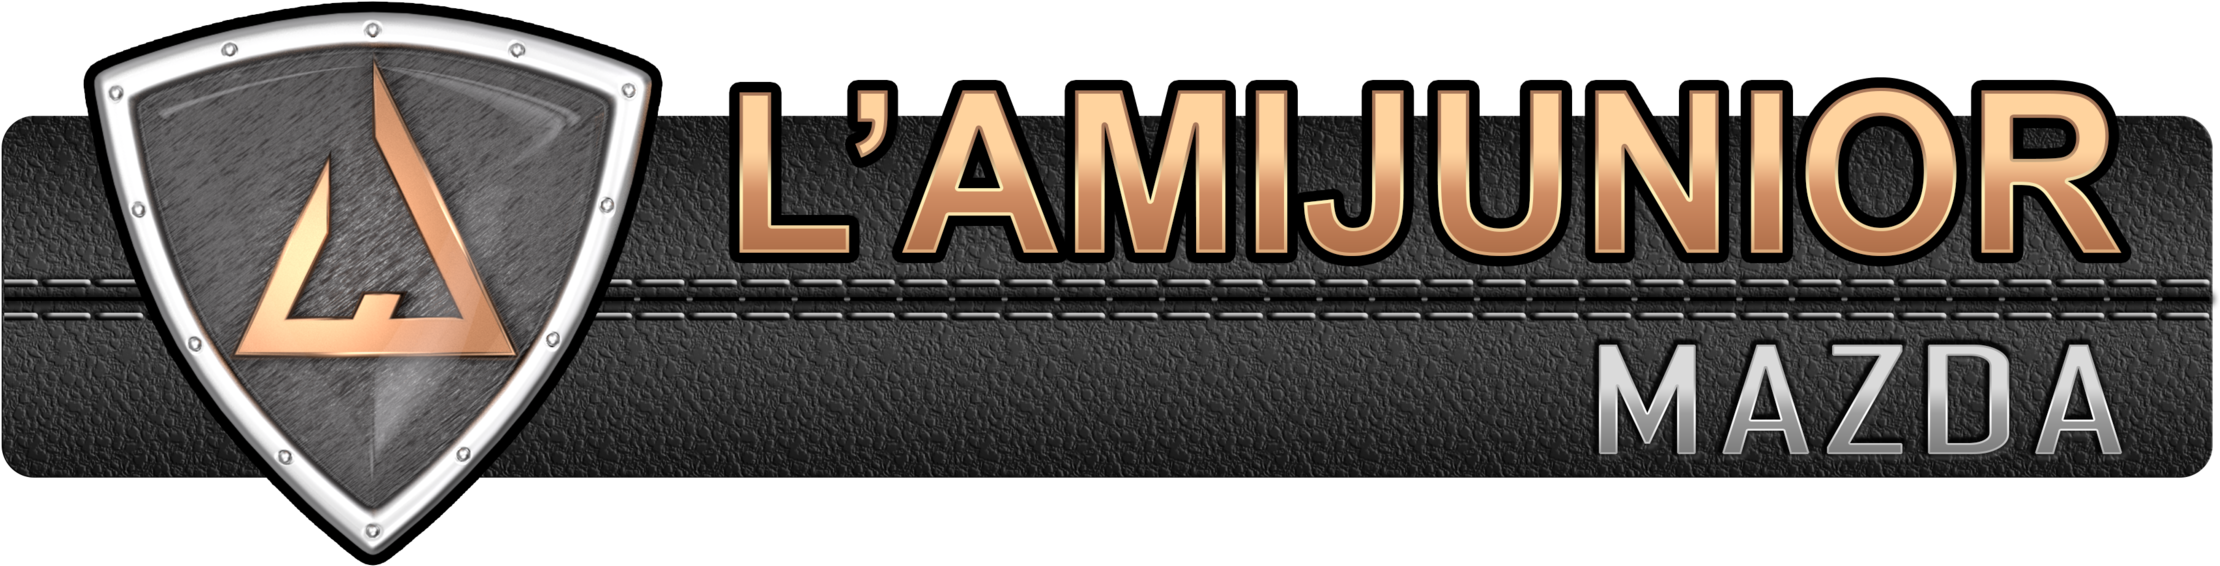 Logo L'ami Junior Mazda - Masquerade Ball Clipart (2600x1408), Png Download